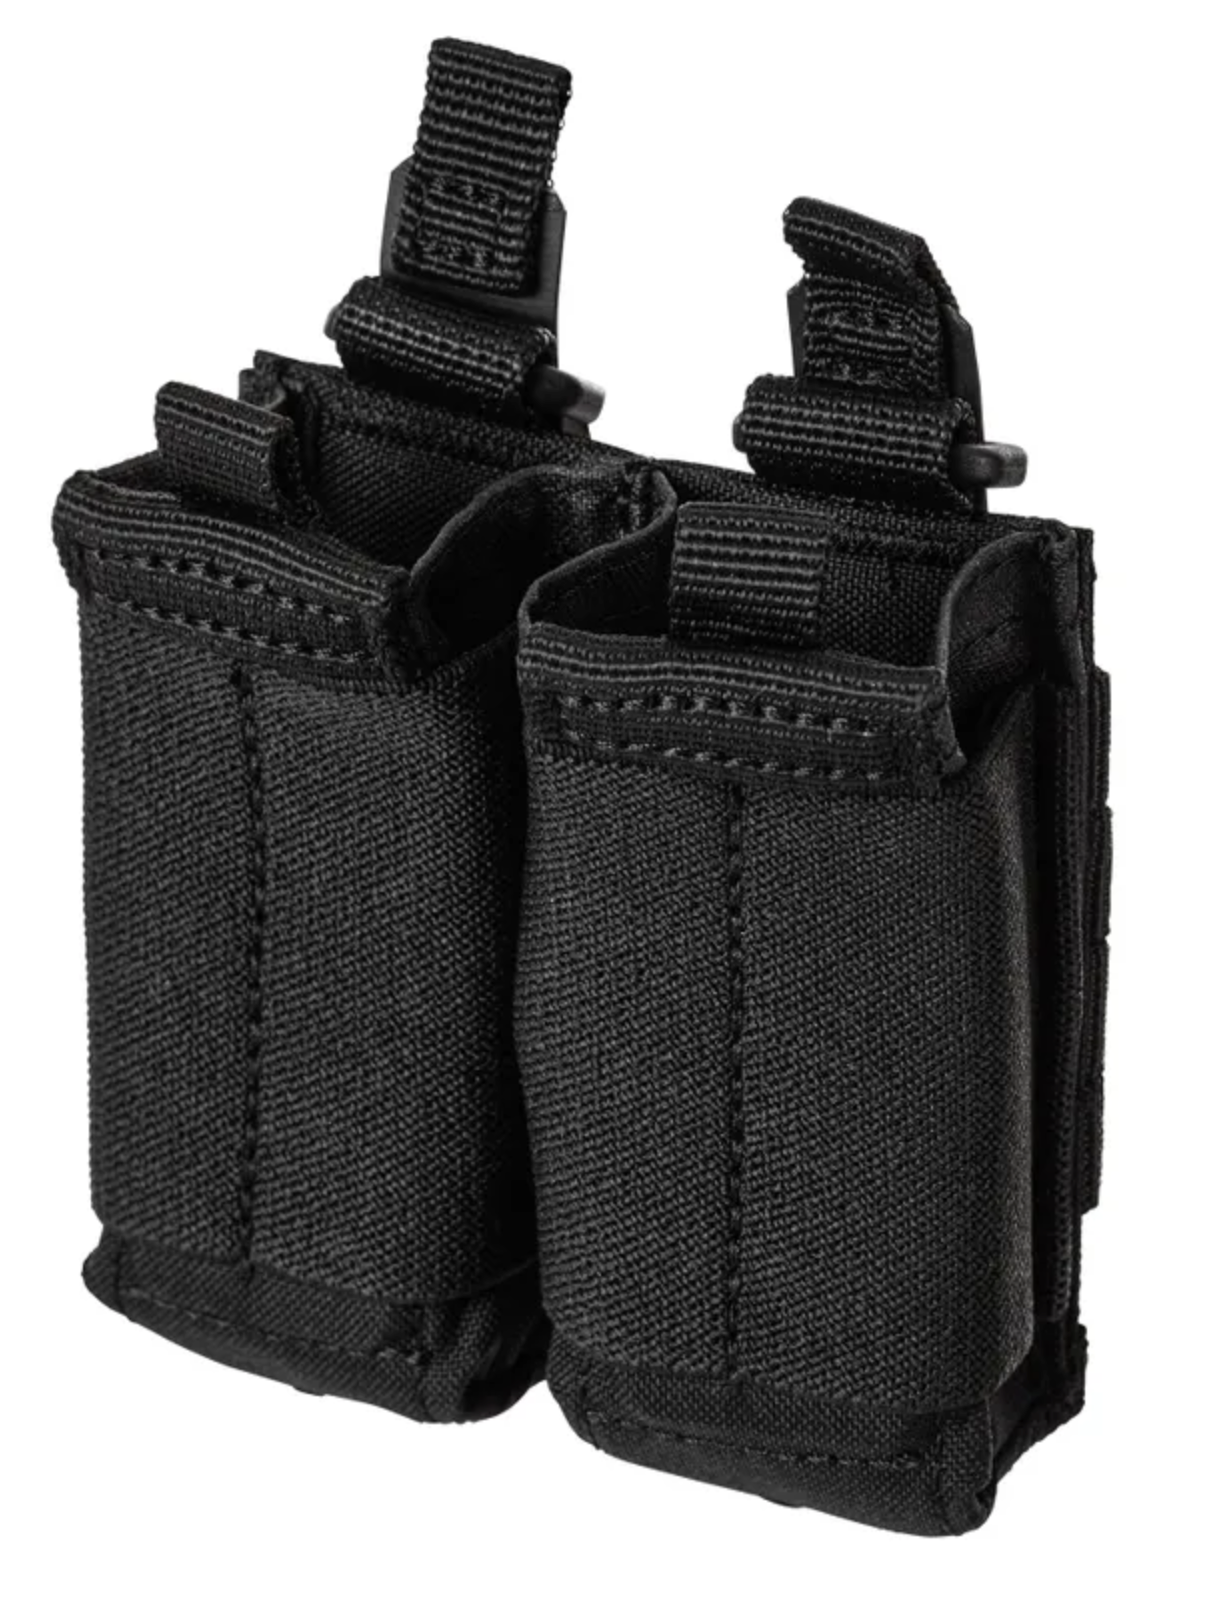 5.11 - Flex Double Pistol Mag Pouch 2.0 - Black (019)